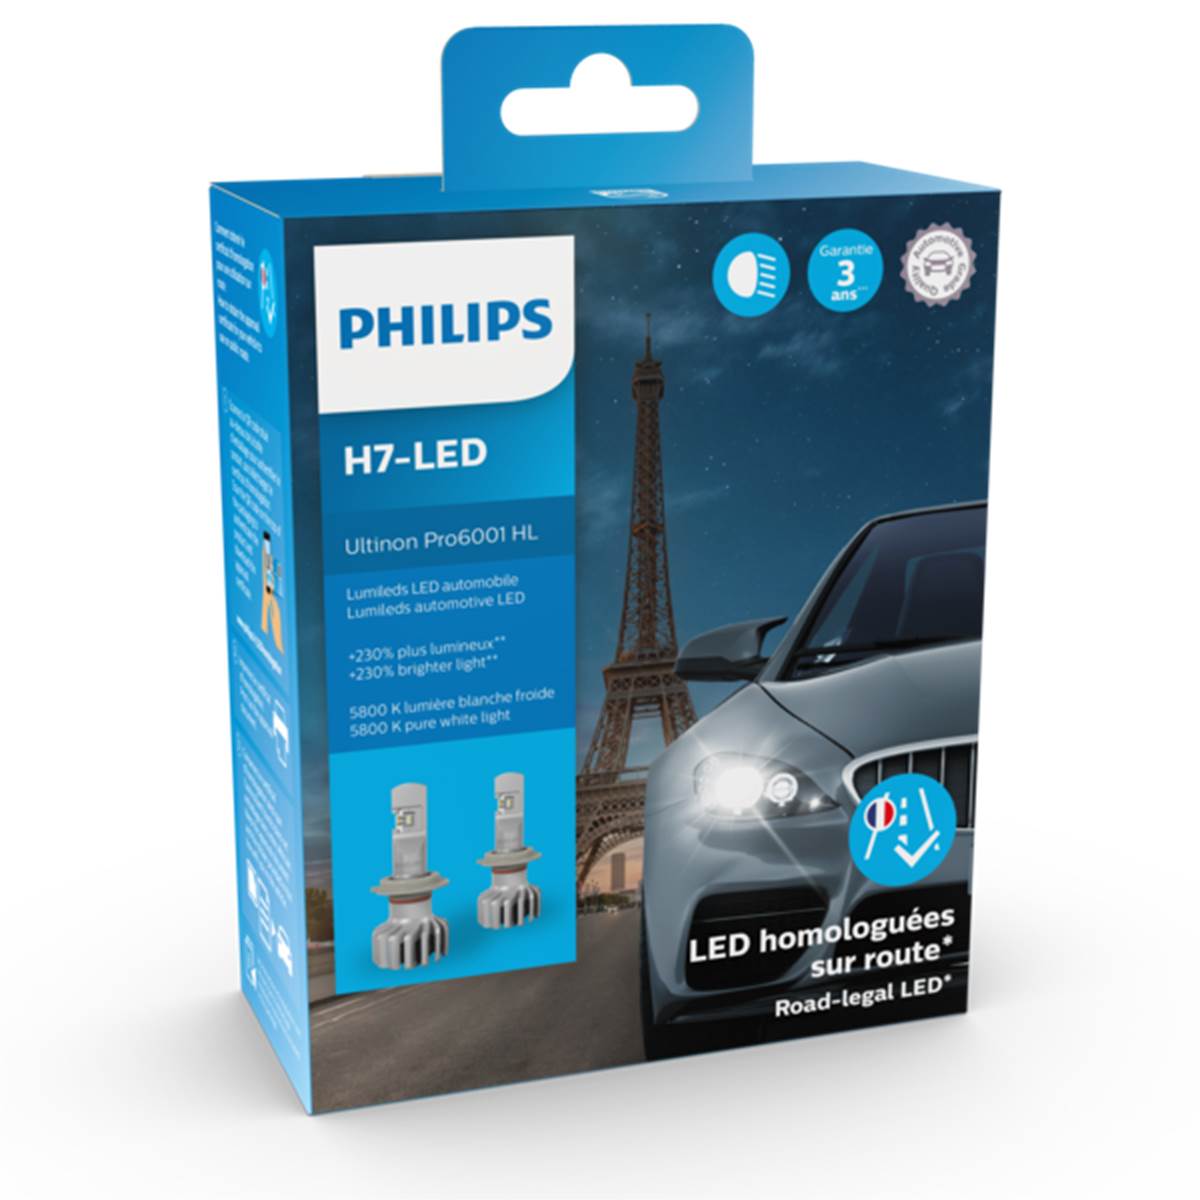 Ampoules (2 pièces) Led H7 Philips Ultinon Pro6001 Hl (homologuées)